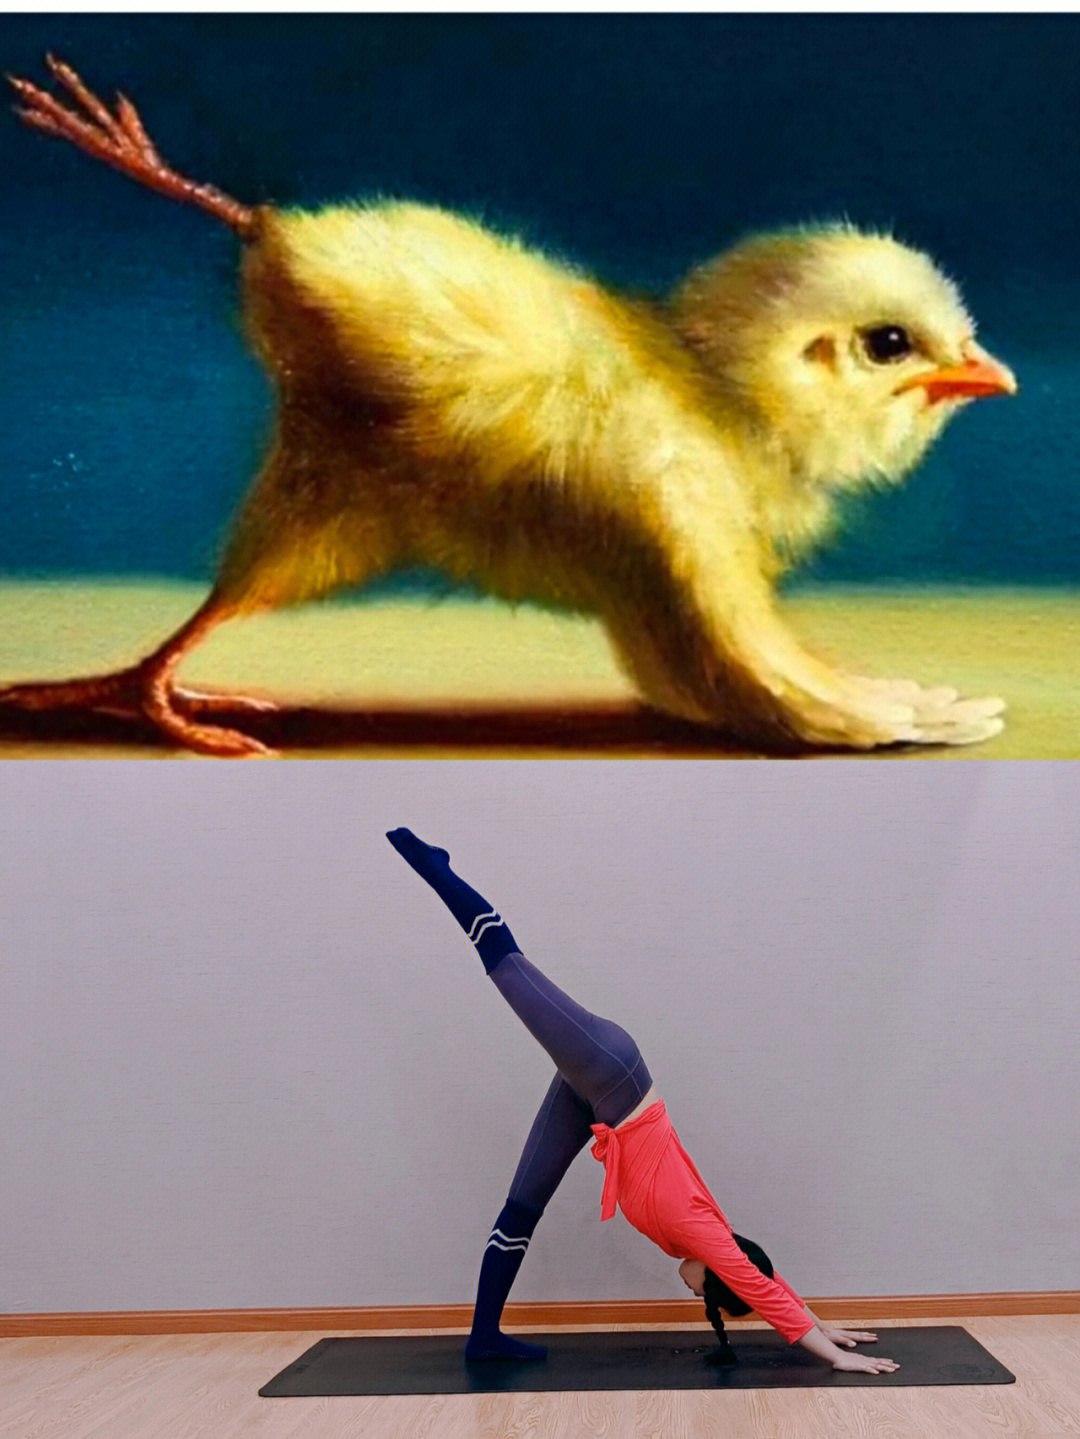 模仿小鸡的动作图片